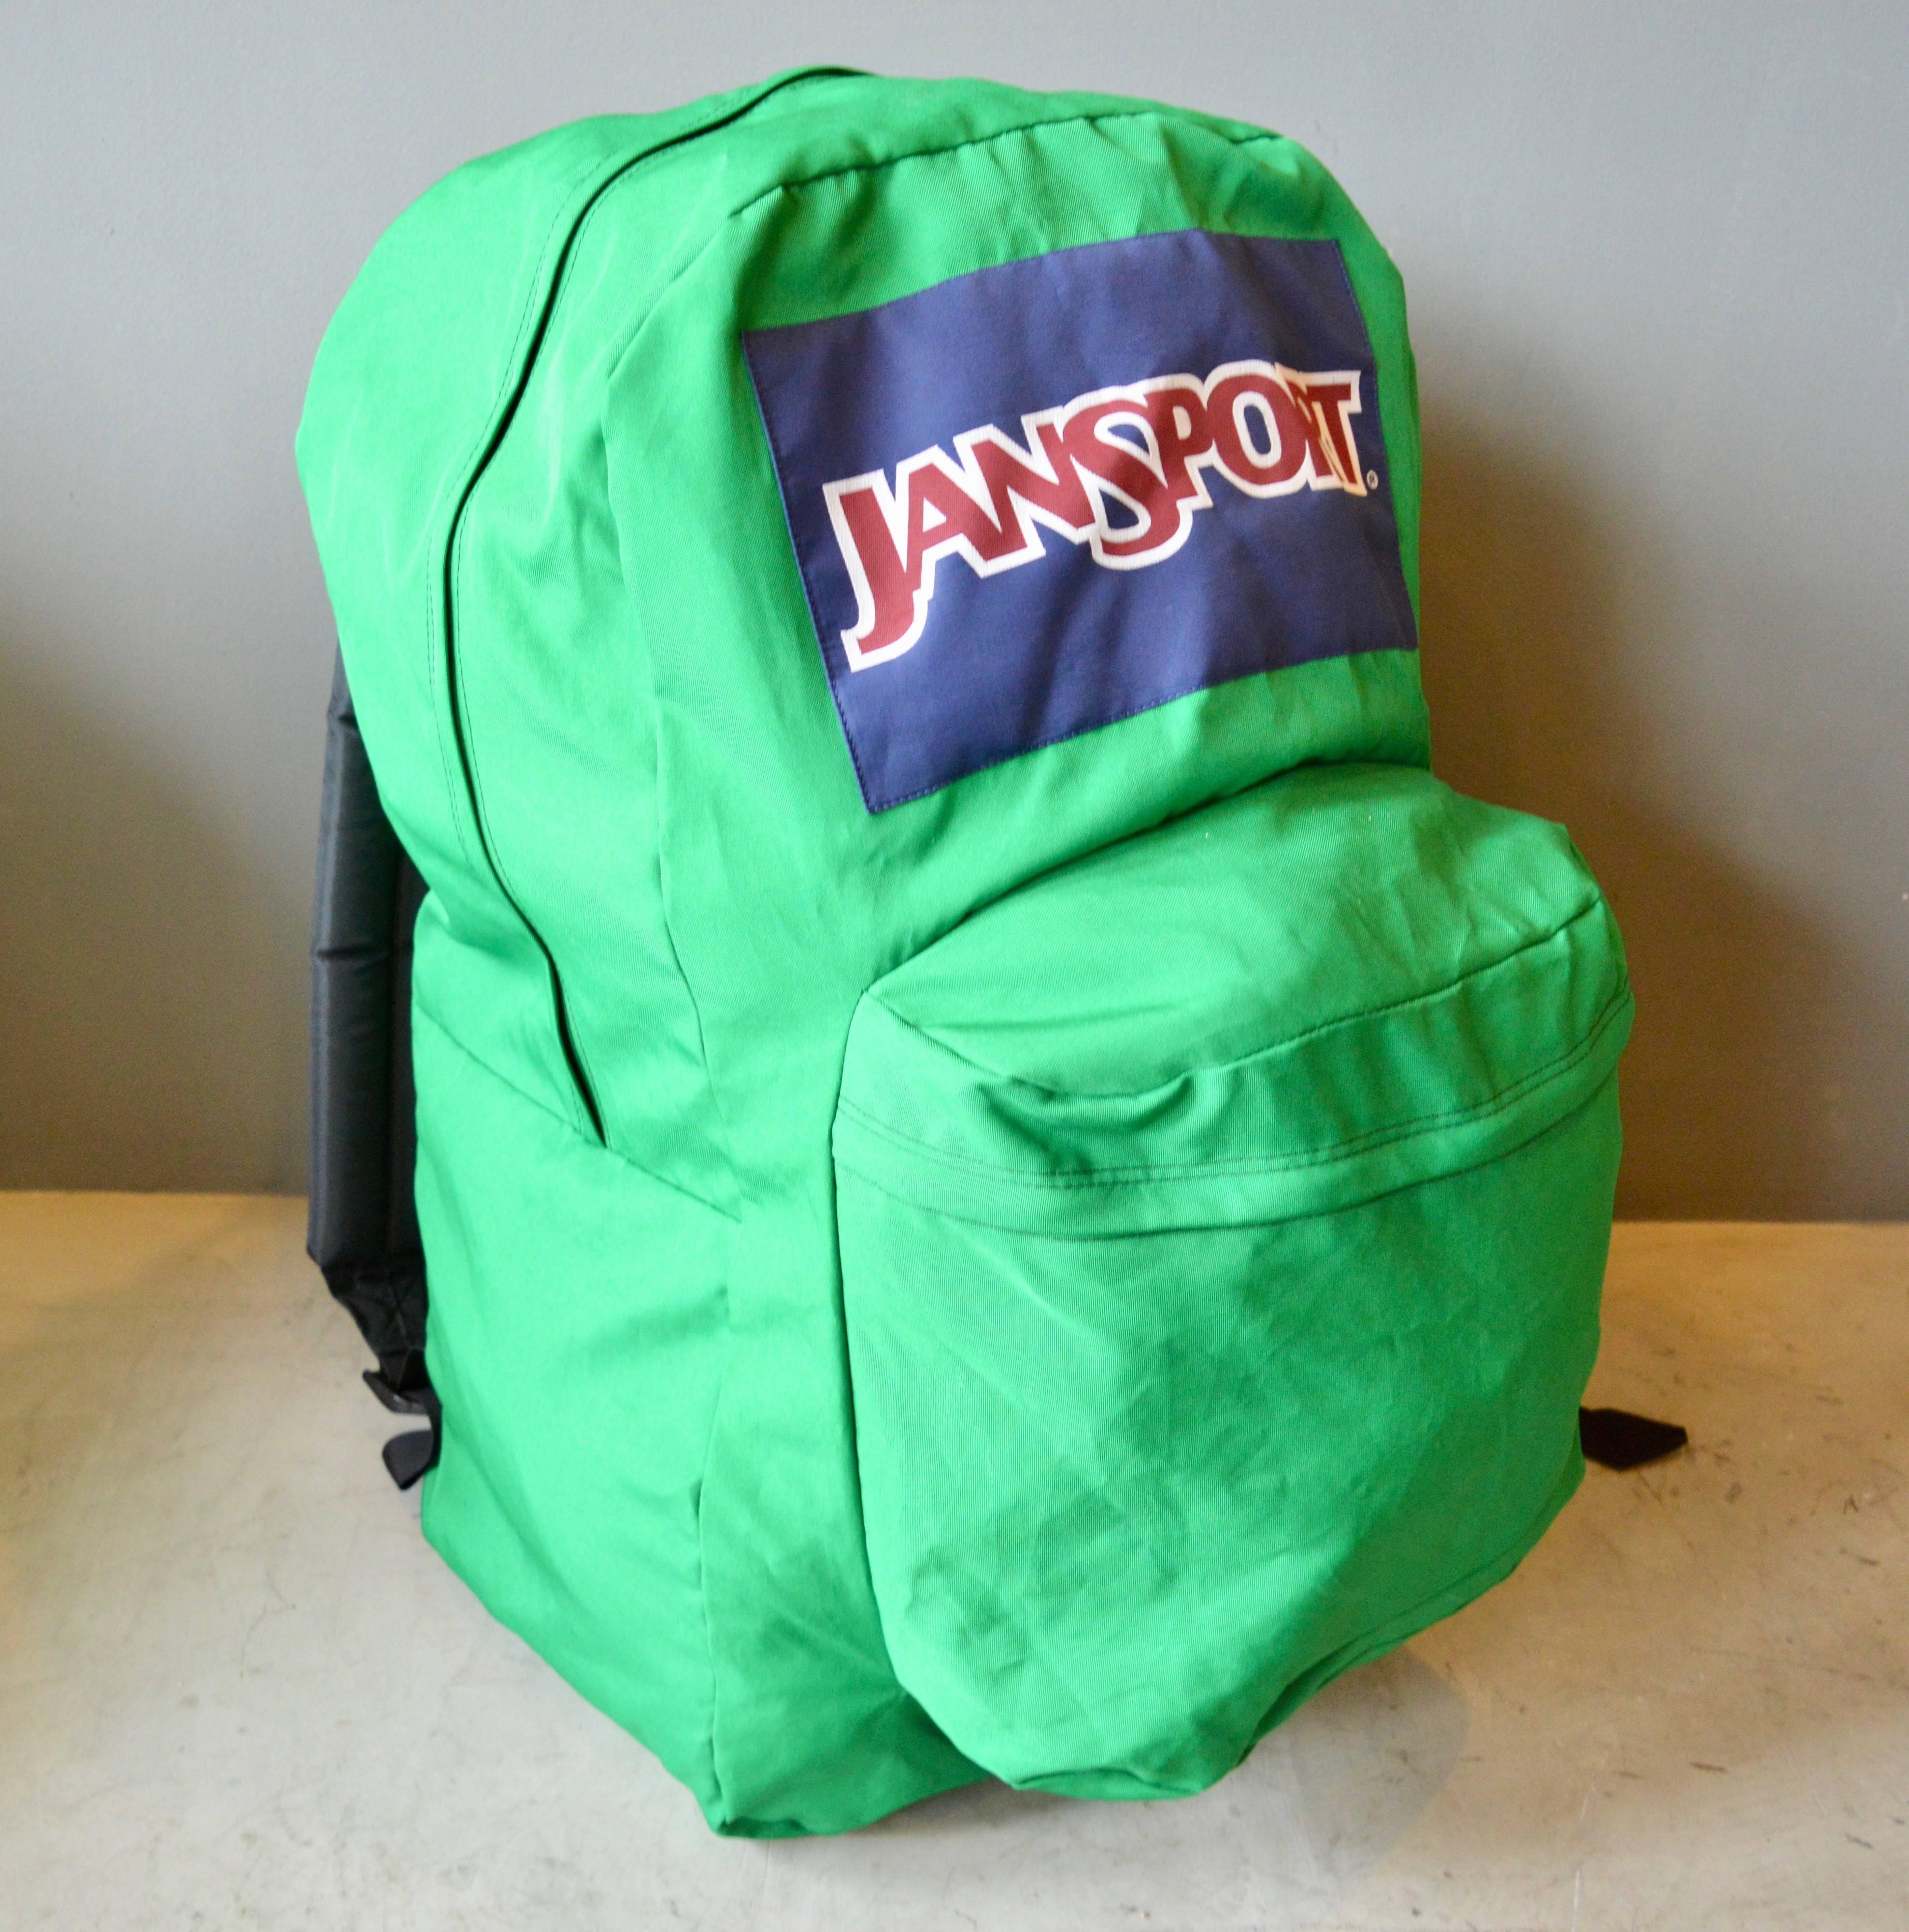 giant jansport backpack for sale